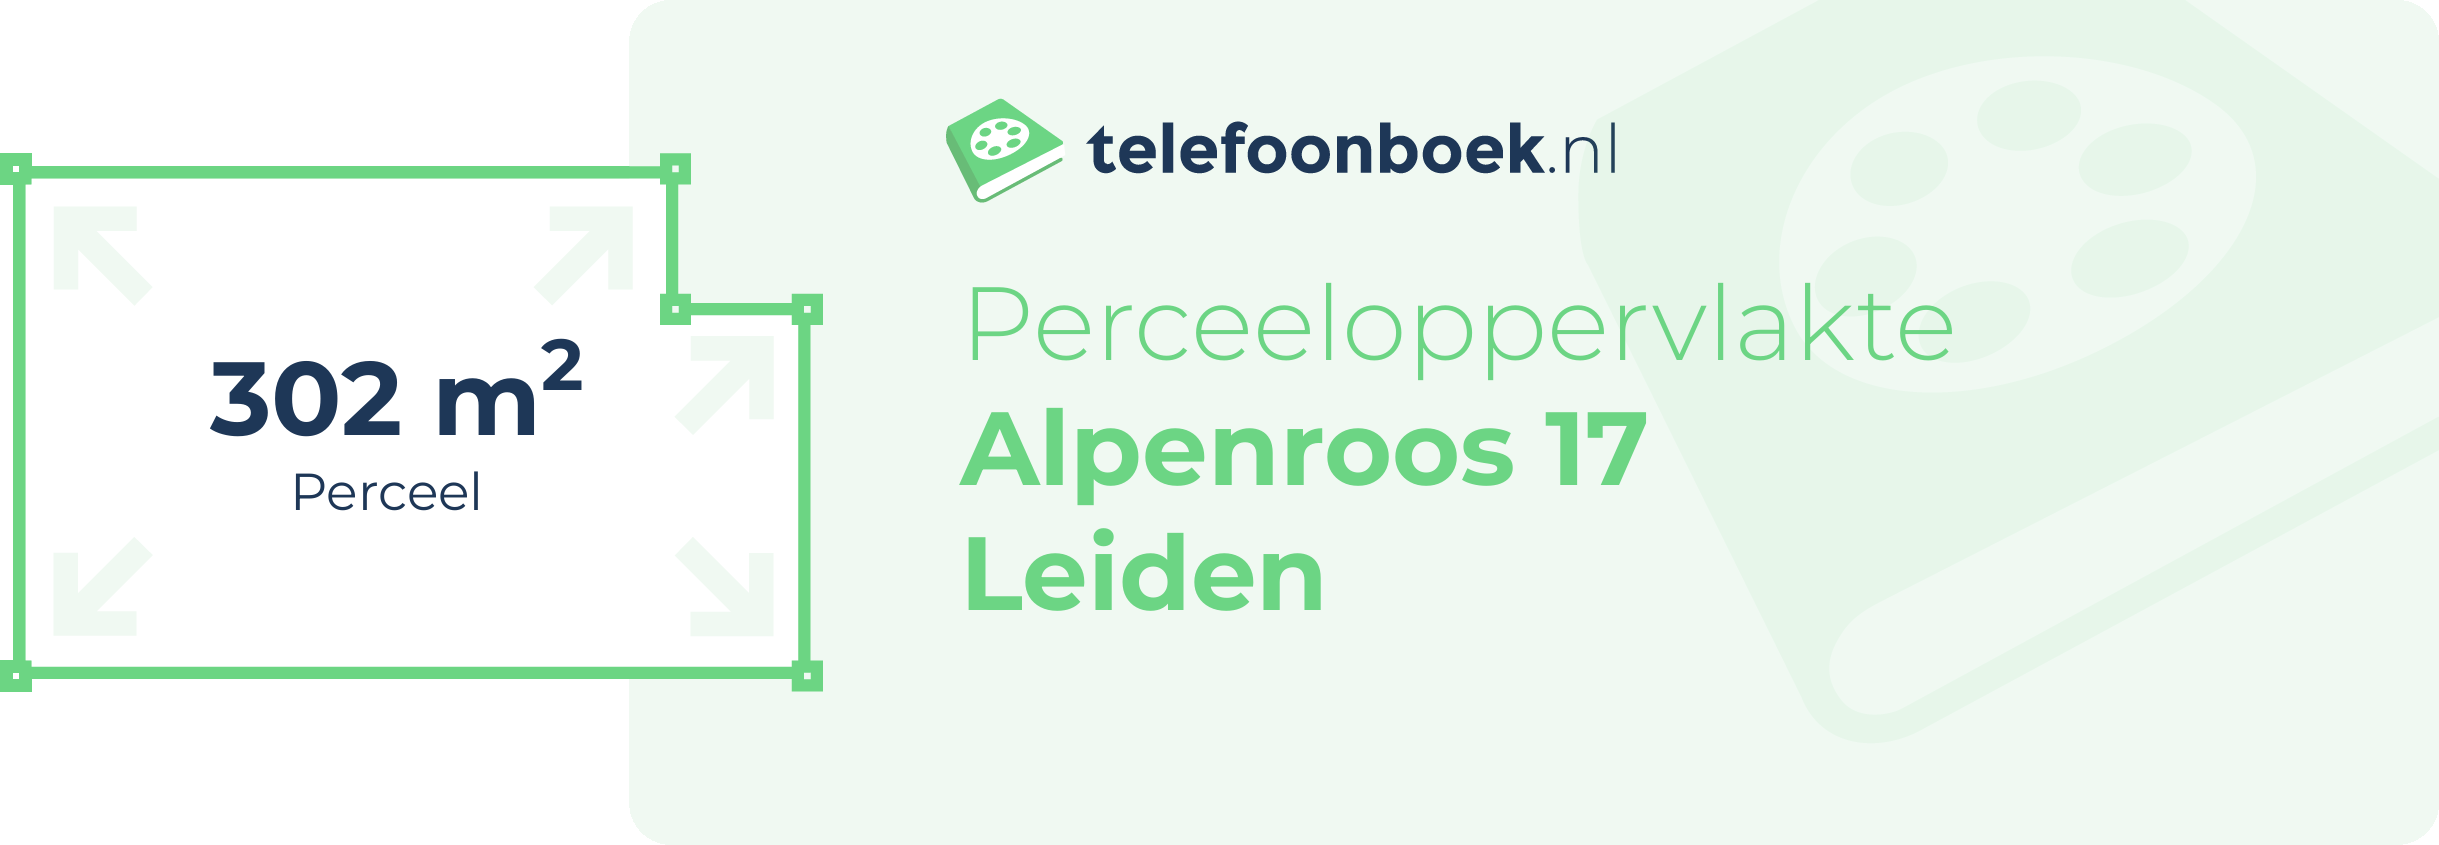 Perceeloppervlakte Alpenroos 17 Leiden